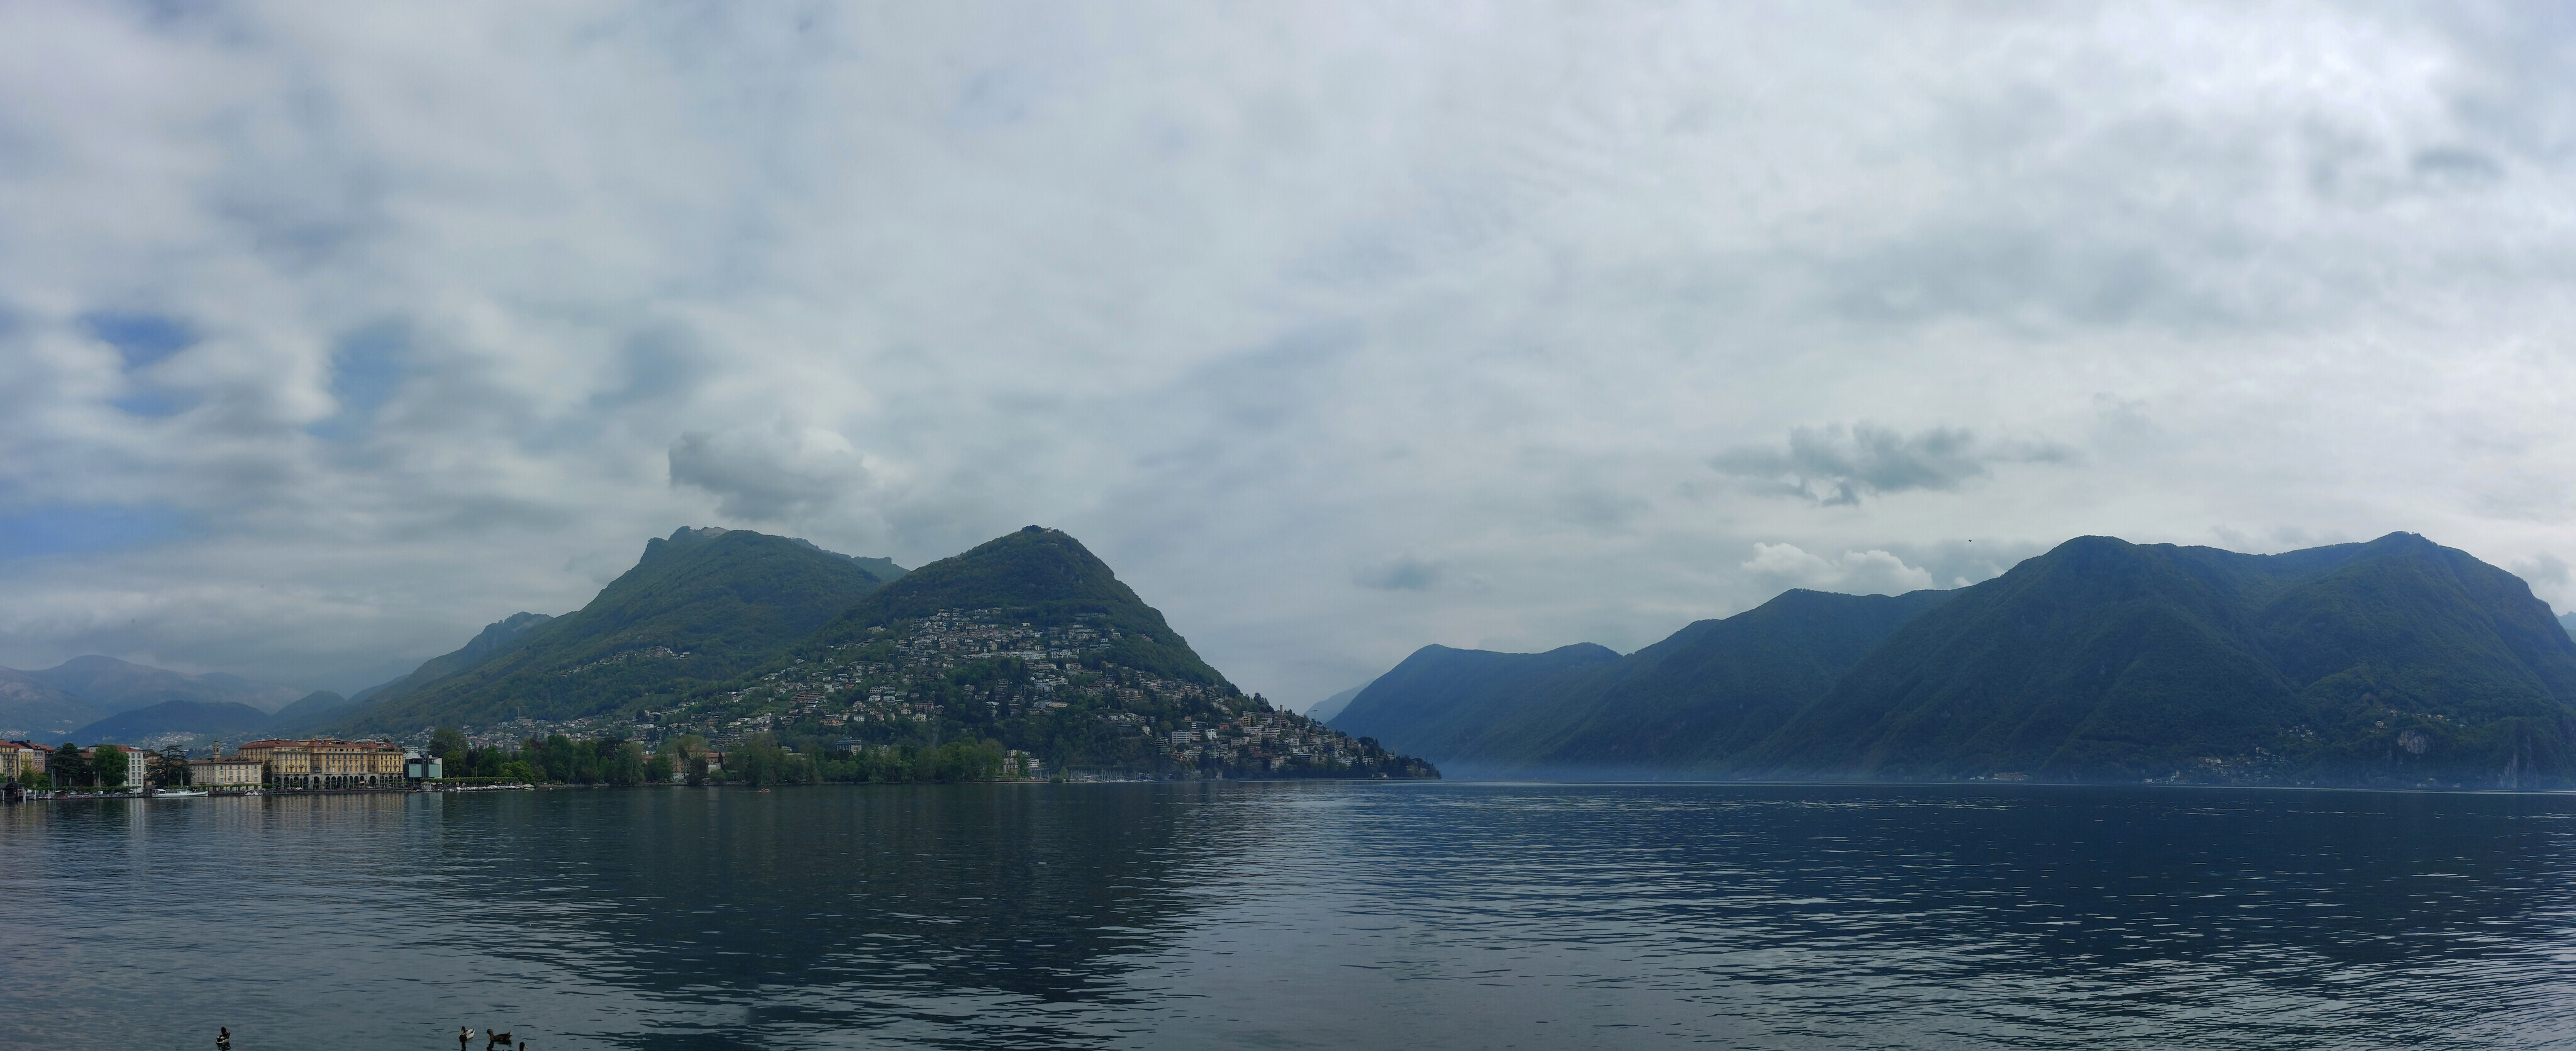 Monte Brè from shores of Lugano